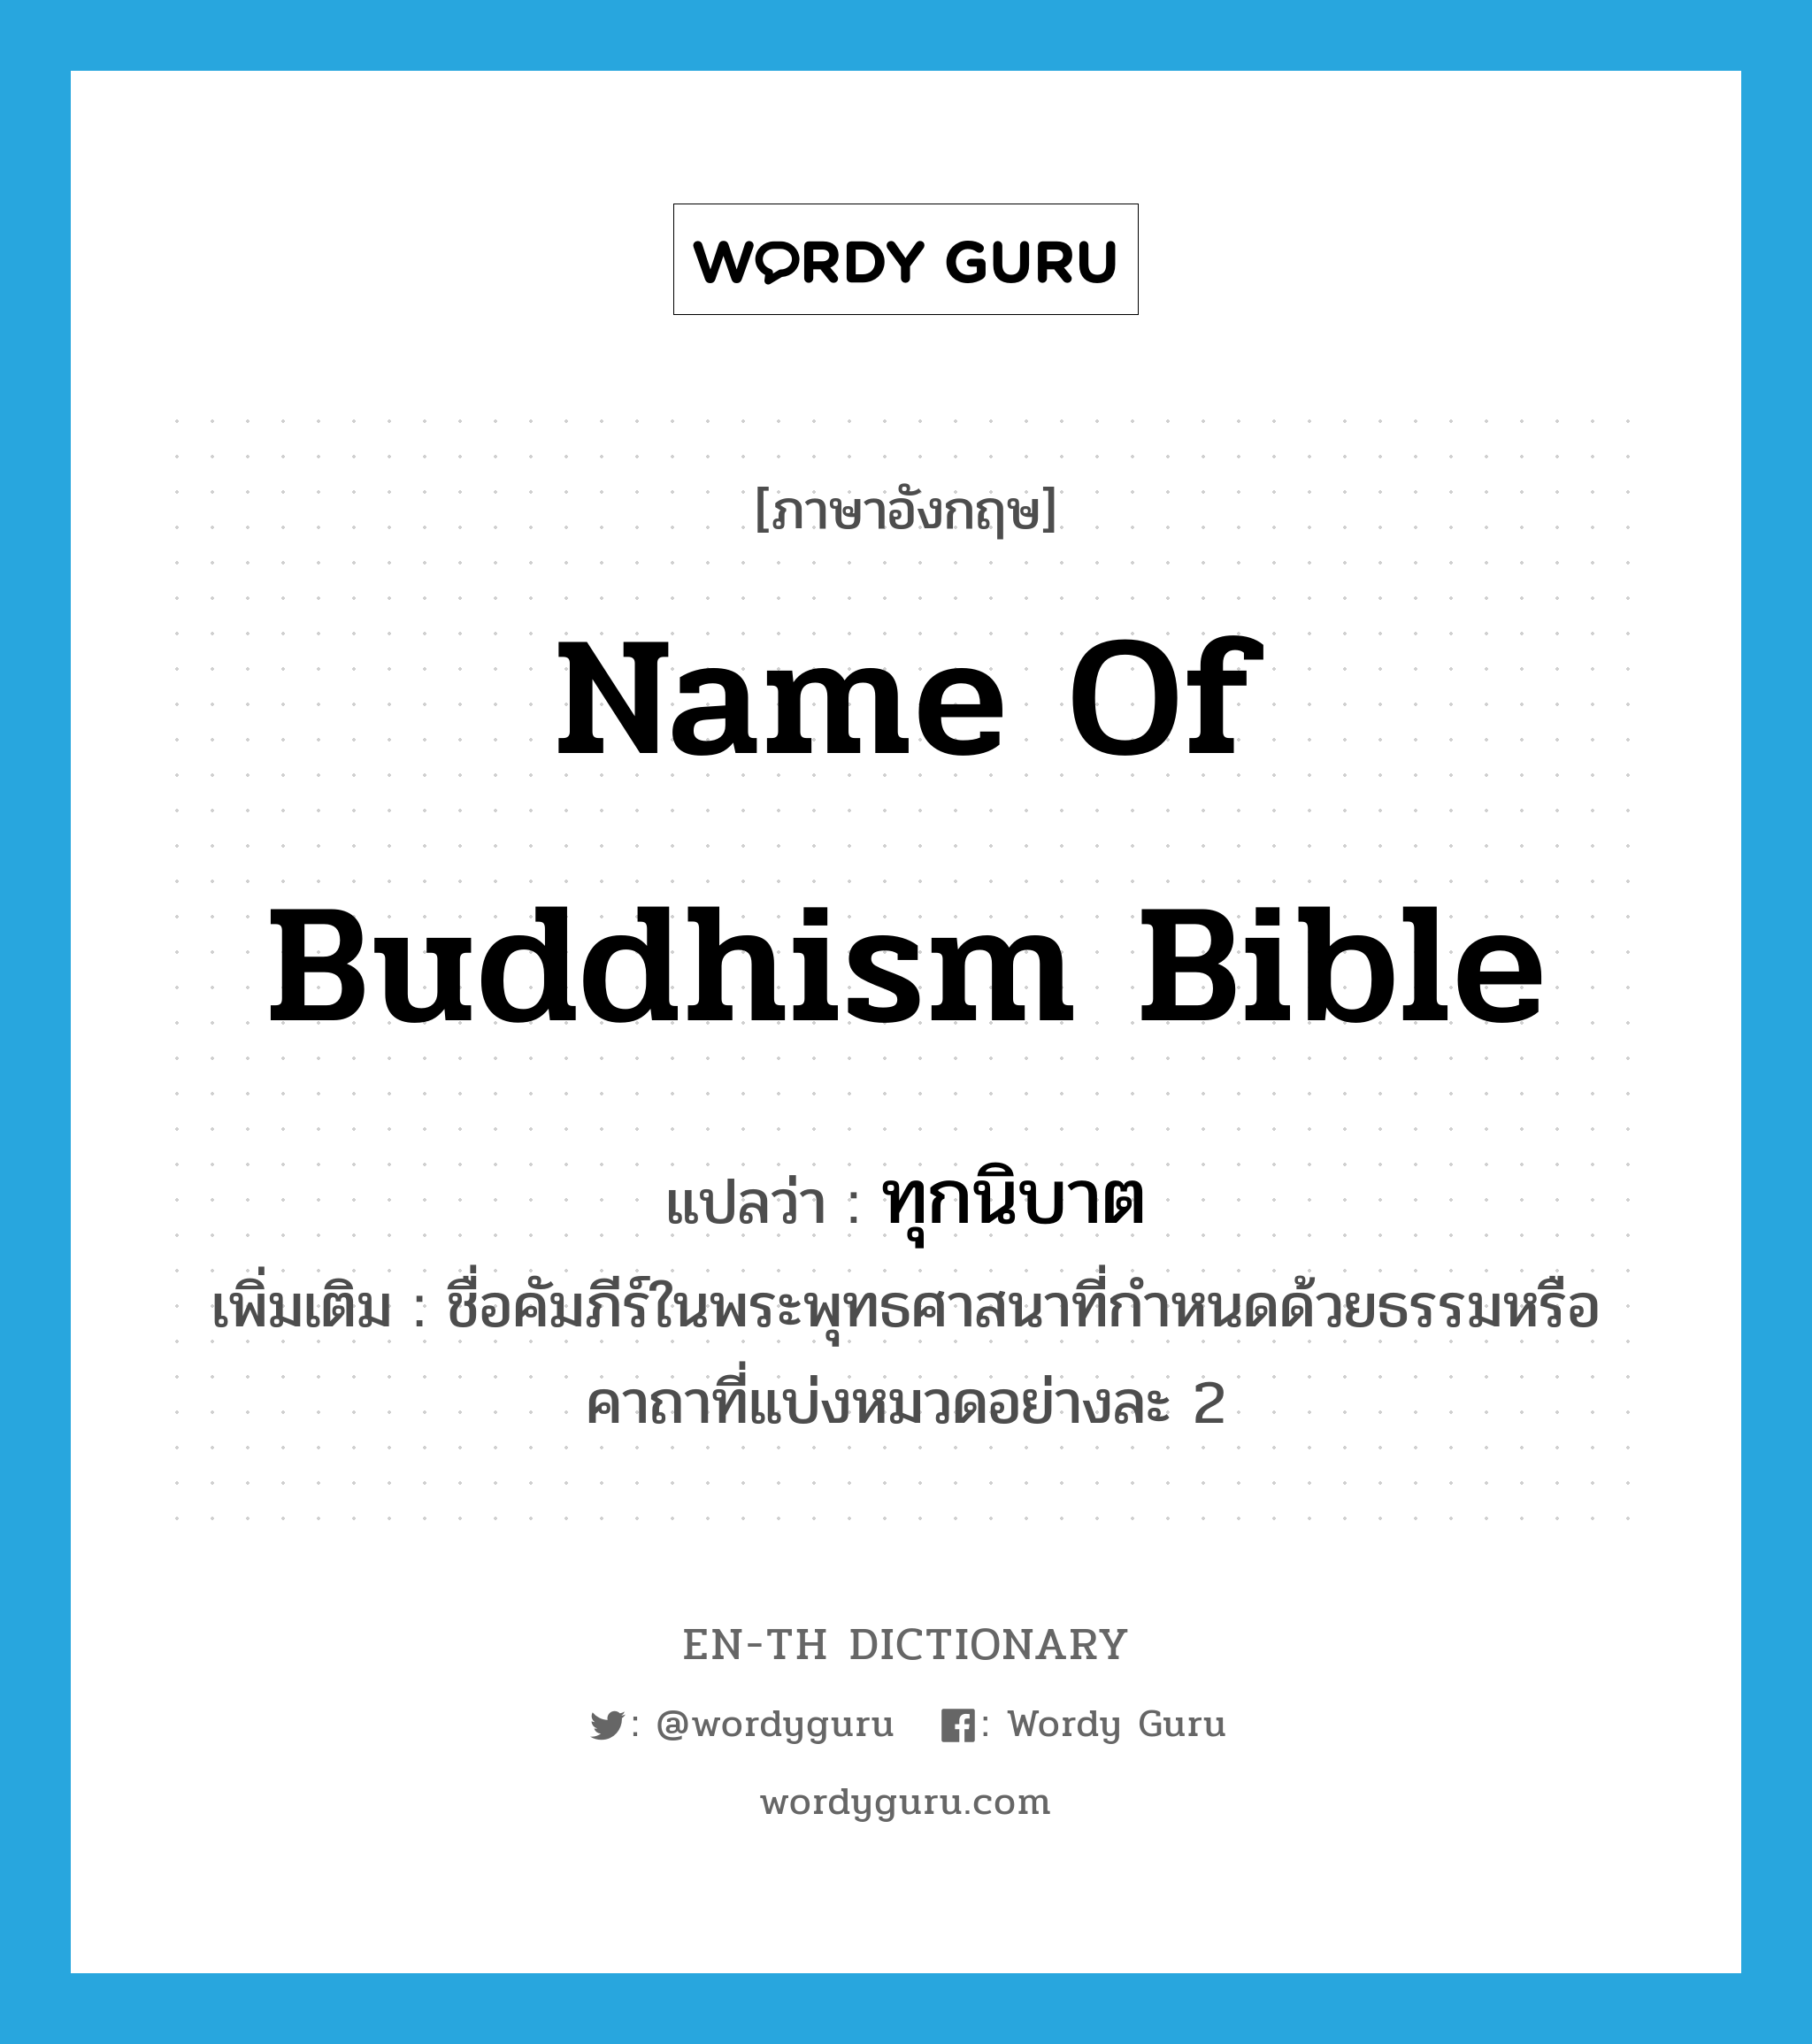 ทุกนิบาต ภาษาอังกฤษ?, คำศัพท์ภาษาอังกฤษ ทุกนิบาต แปลว่า name of Buddhism bible ประเภท N เพิ่มเติม ชื่อคัมภีร์ในพระพุทธศาสนาที่กำหนดด้วยธรรมหรือคาถาที่แบ่งหมวดอย่างละ 2 หมวด N